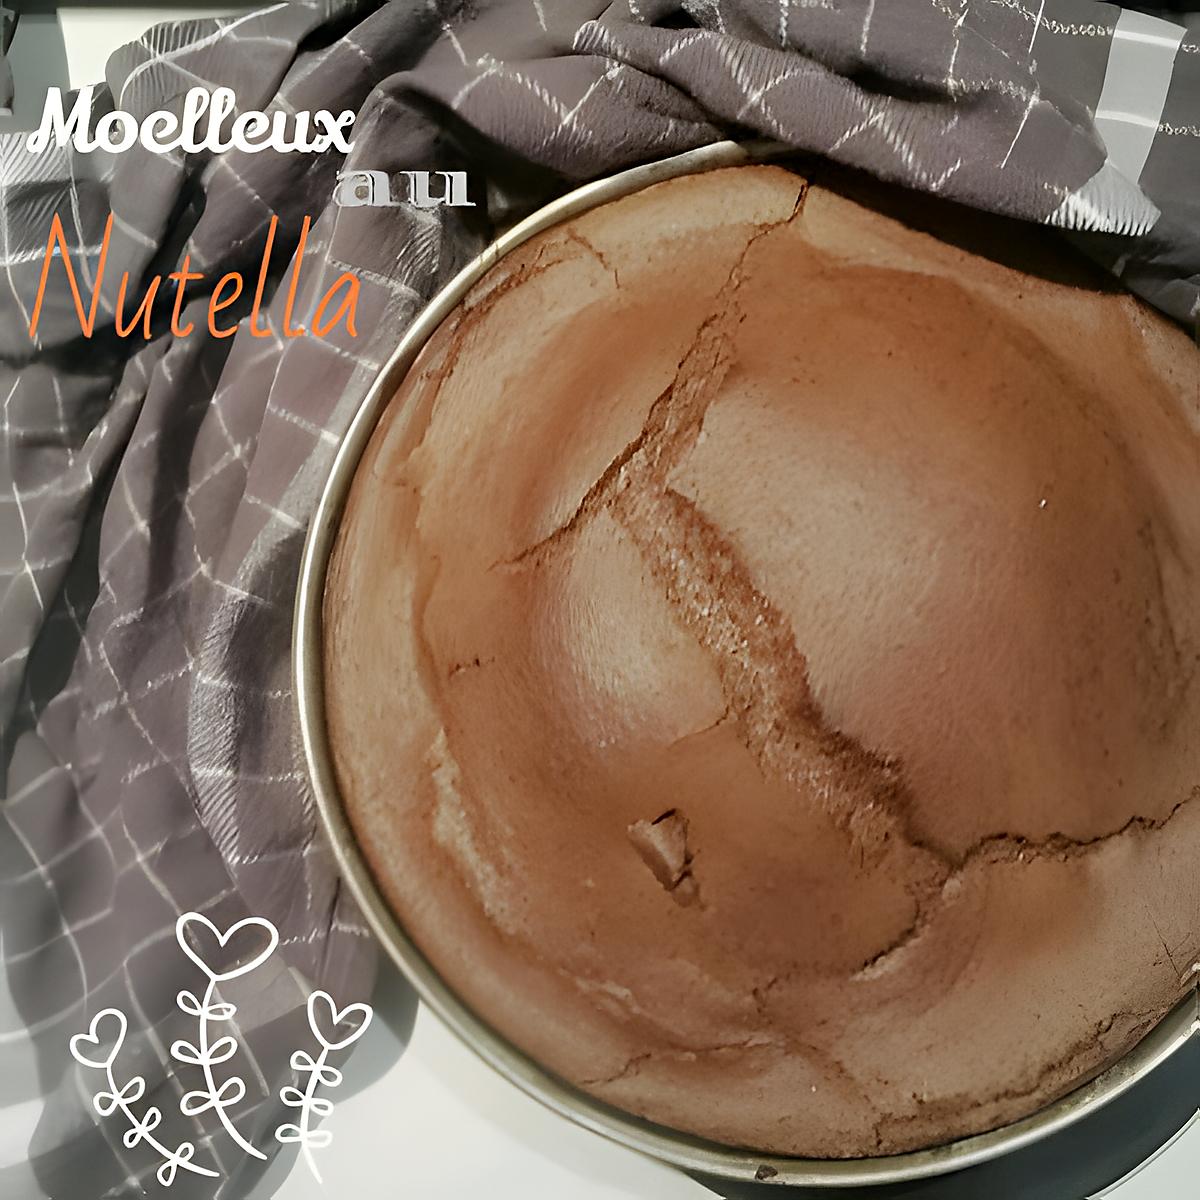 recette THERMOMIX : Moelleux au Nutella .. pure et simple tuerie !